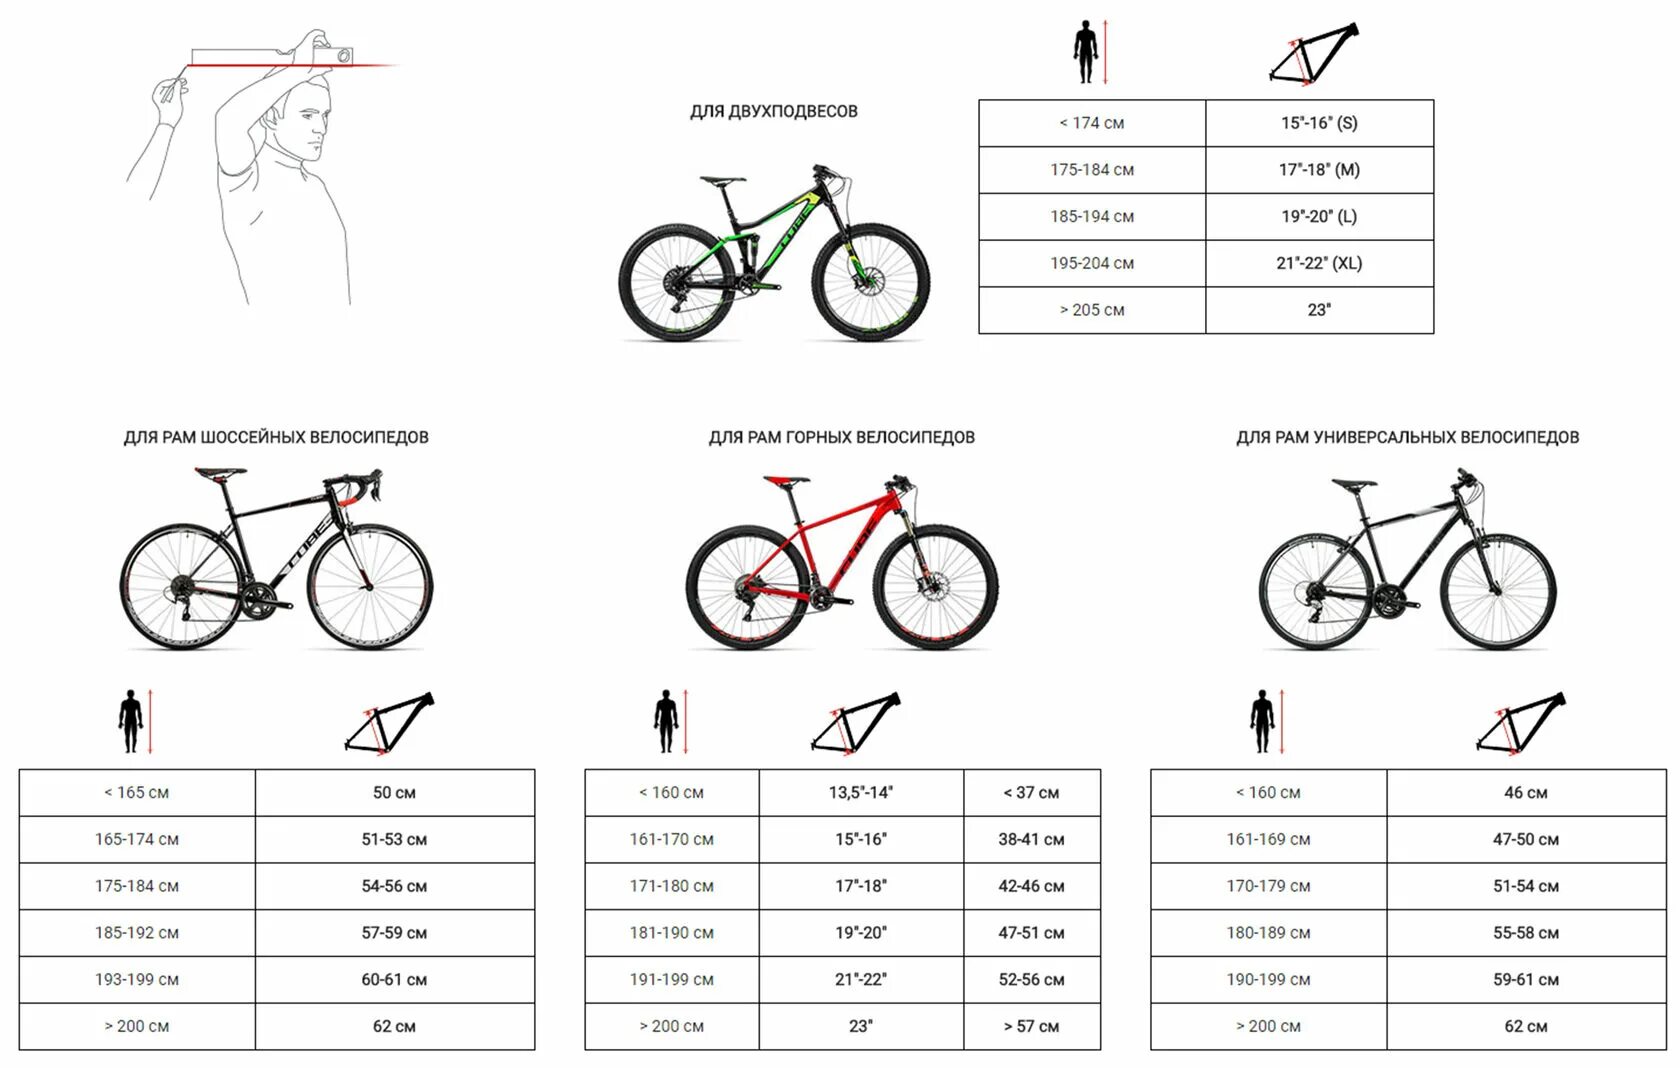 Рама 20 велосипеда на какой. Велосипед stels размер рамы и рост. Как выбрать размер горного велосипеда по росту таблица. Как выбрать параметры велосипеда по росту и весу таблица. Рост и рама велосипеда таблица.